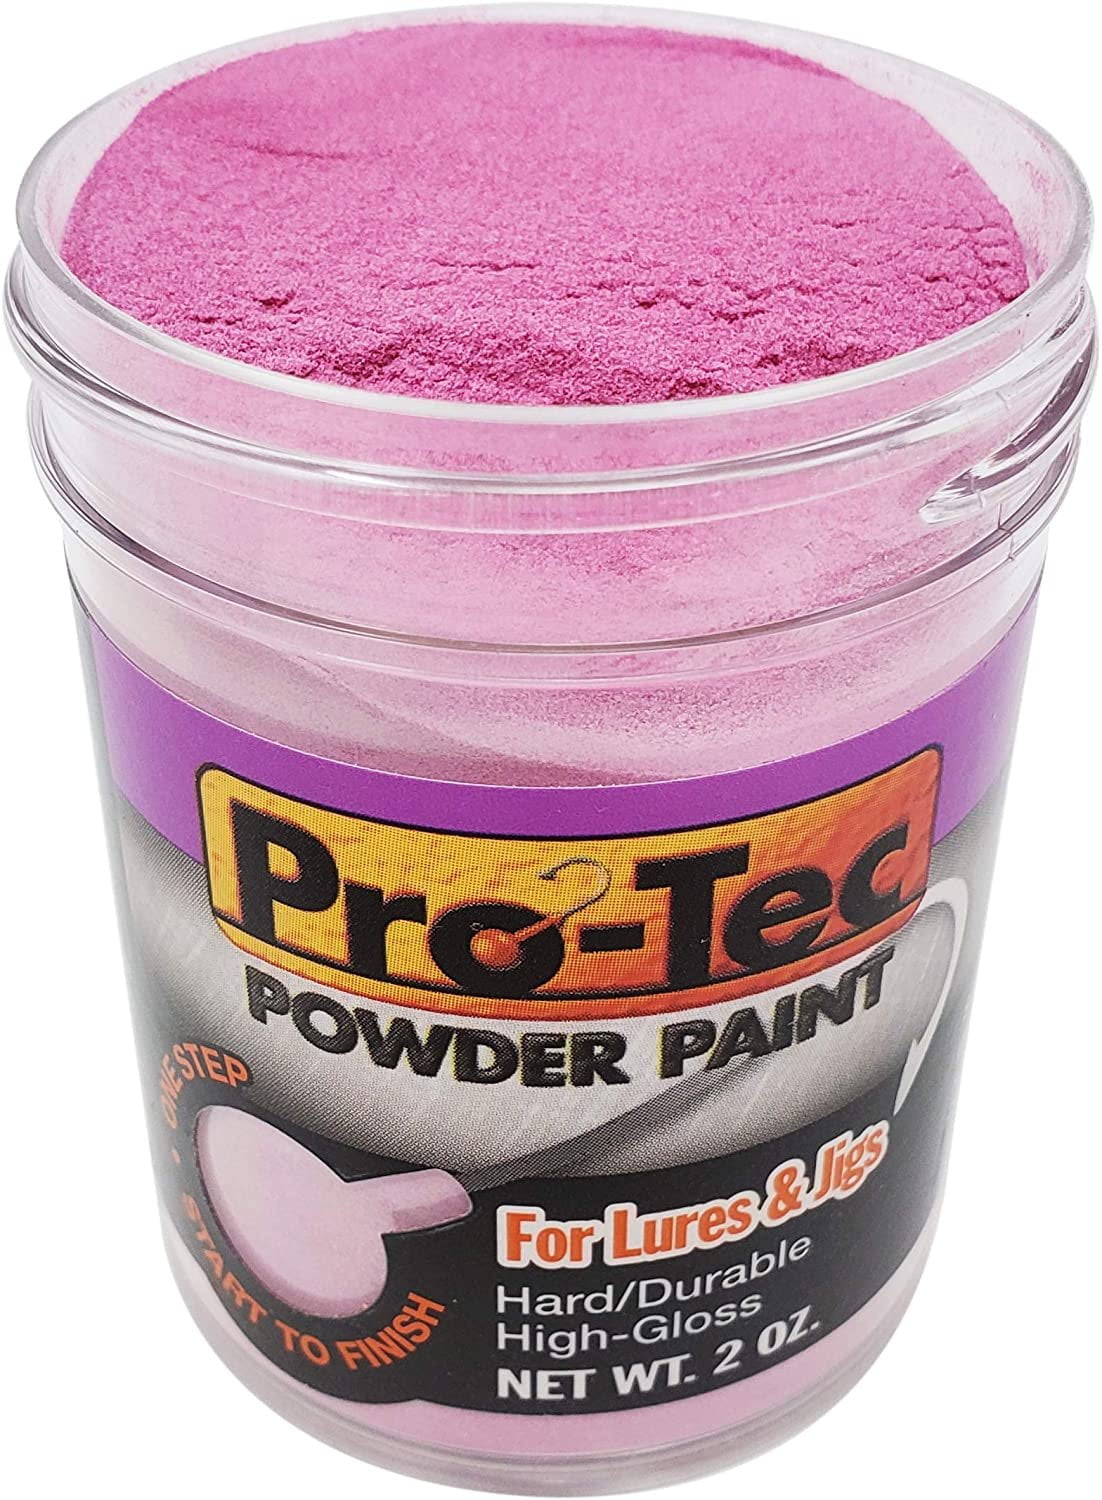 Component Pro Tec Powder Paint 2oz Chartreuse